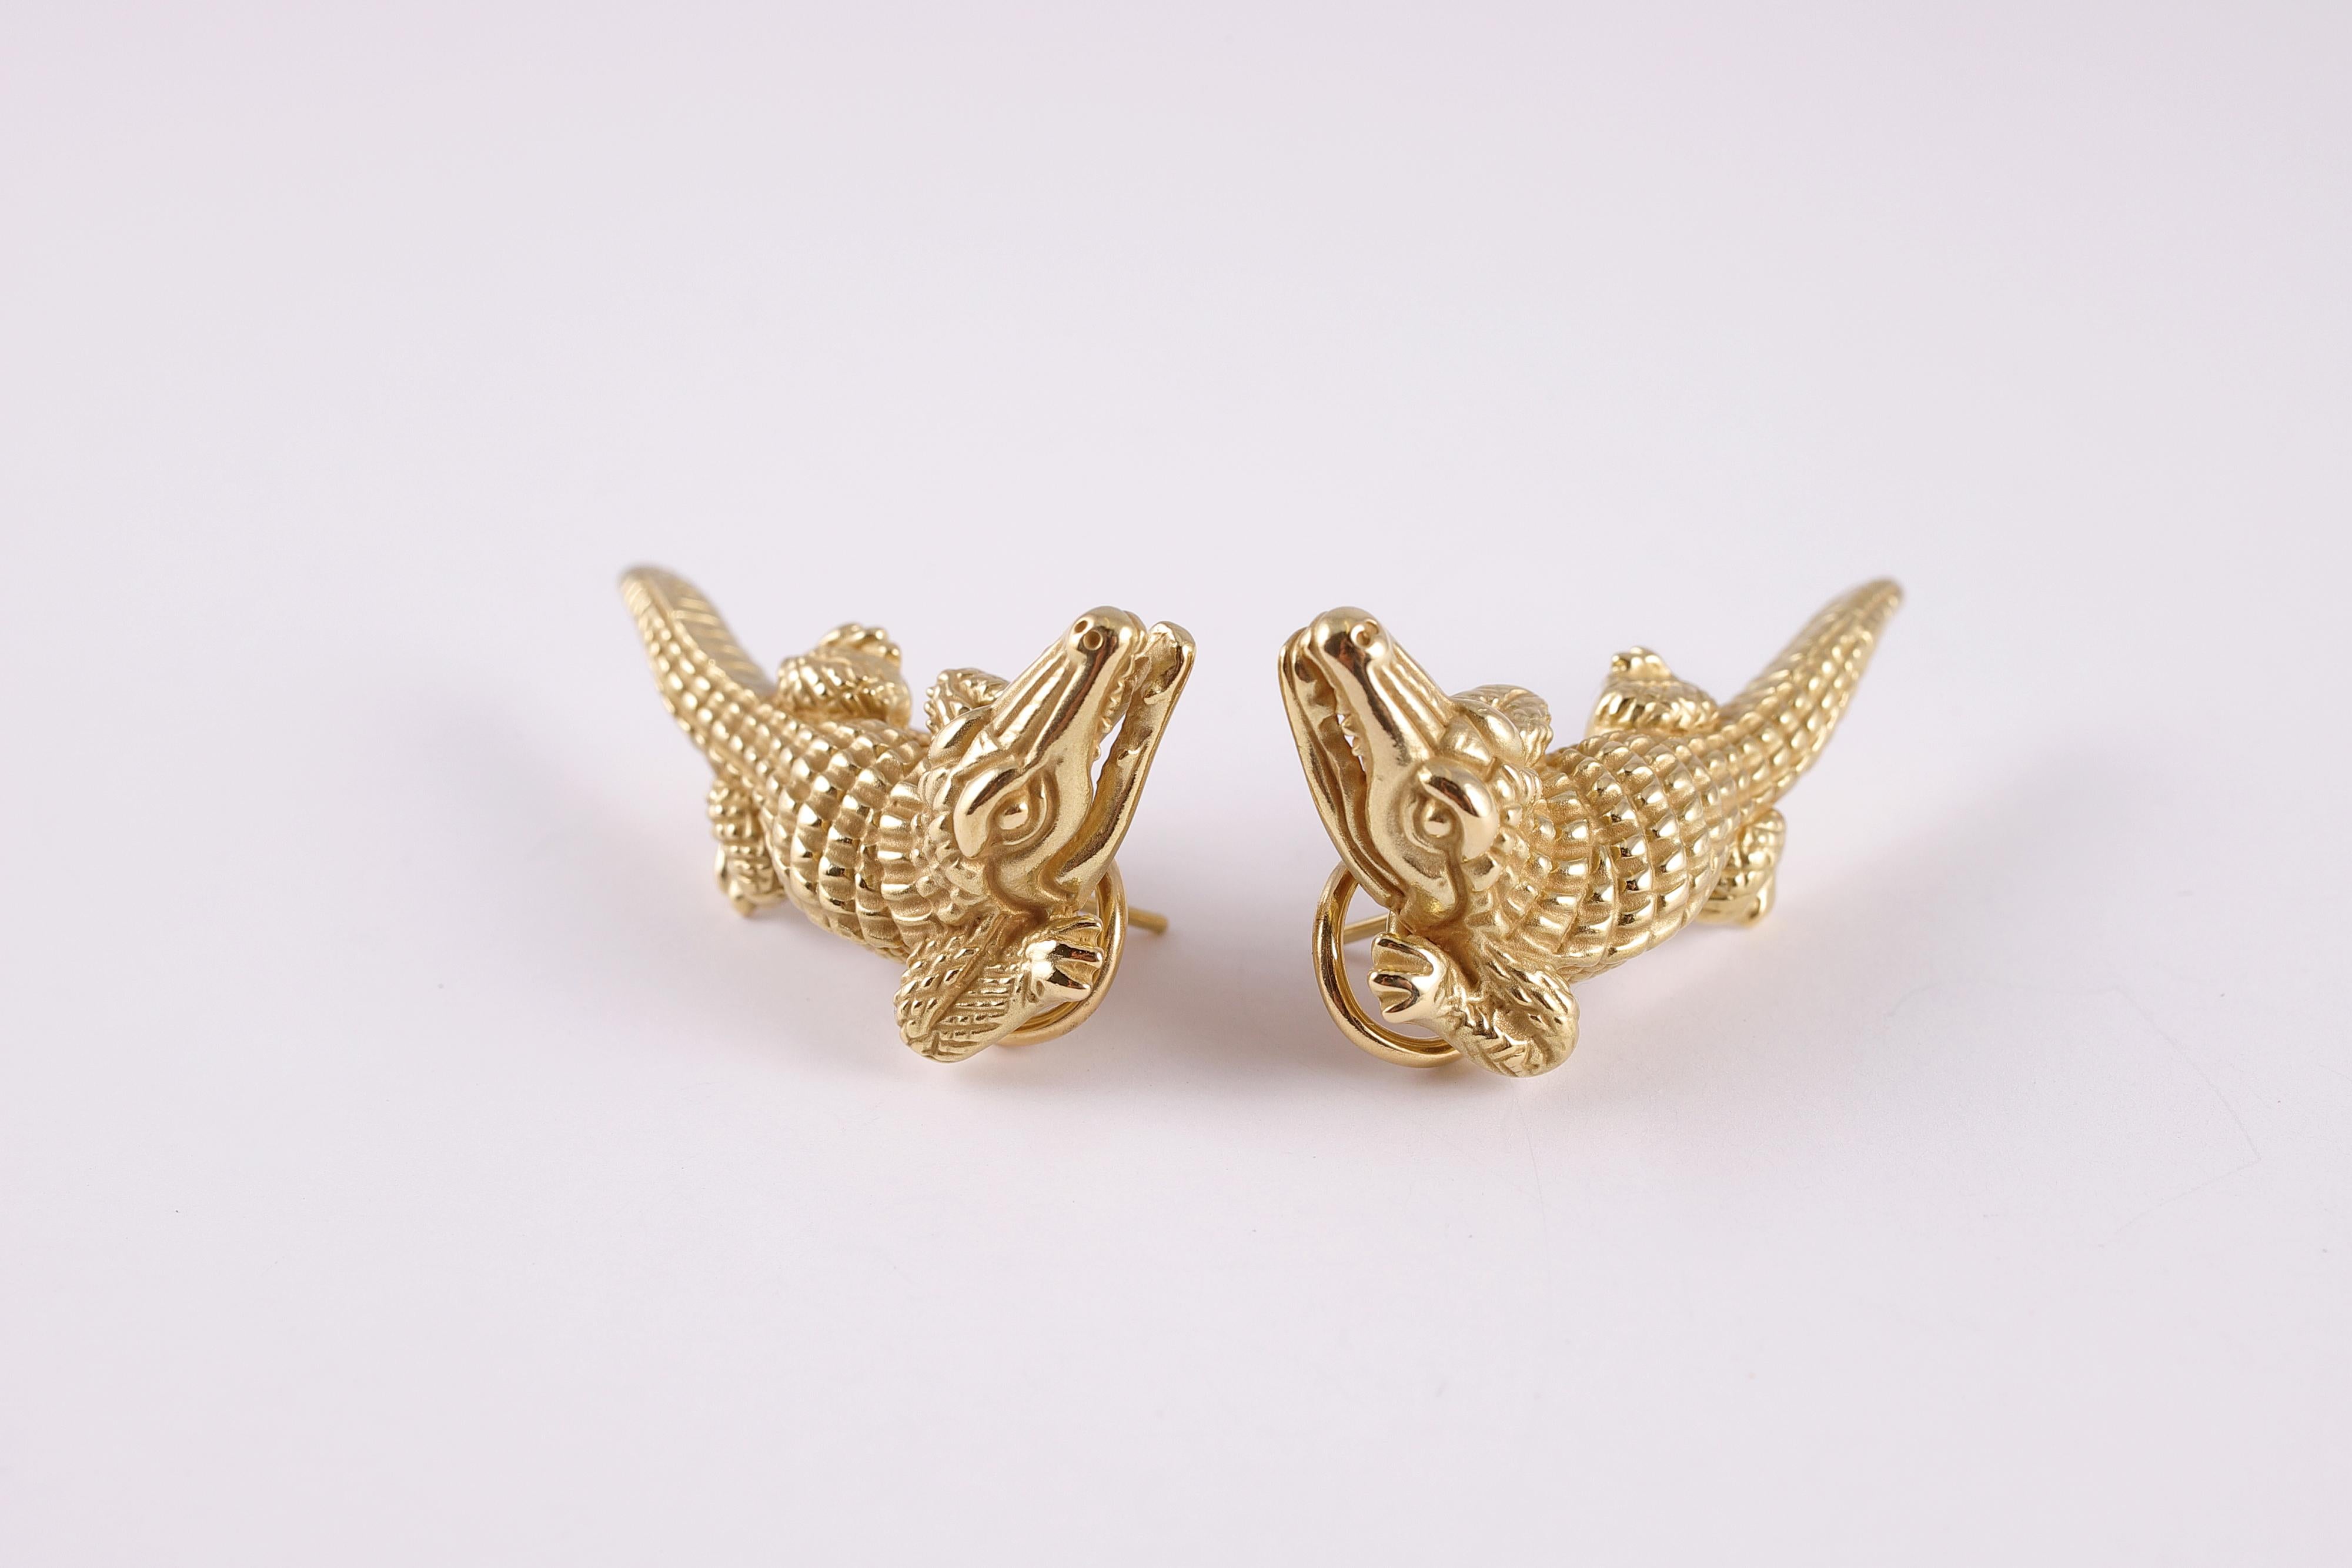 Green Gold Alligator Earrings by Kieselstein-Cord 2